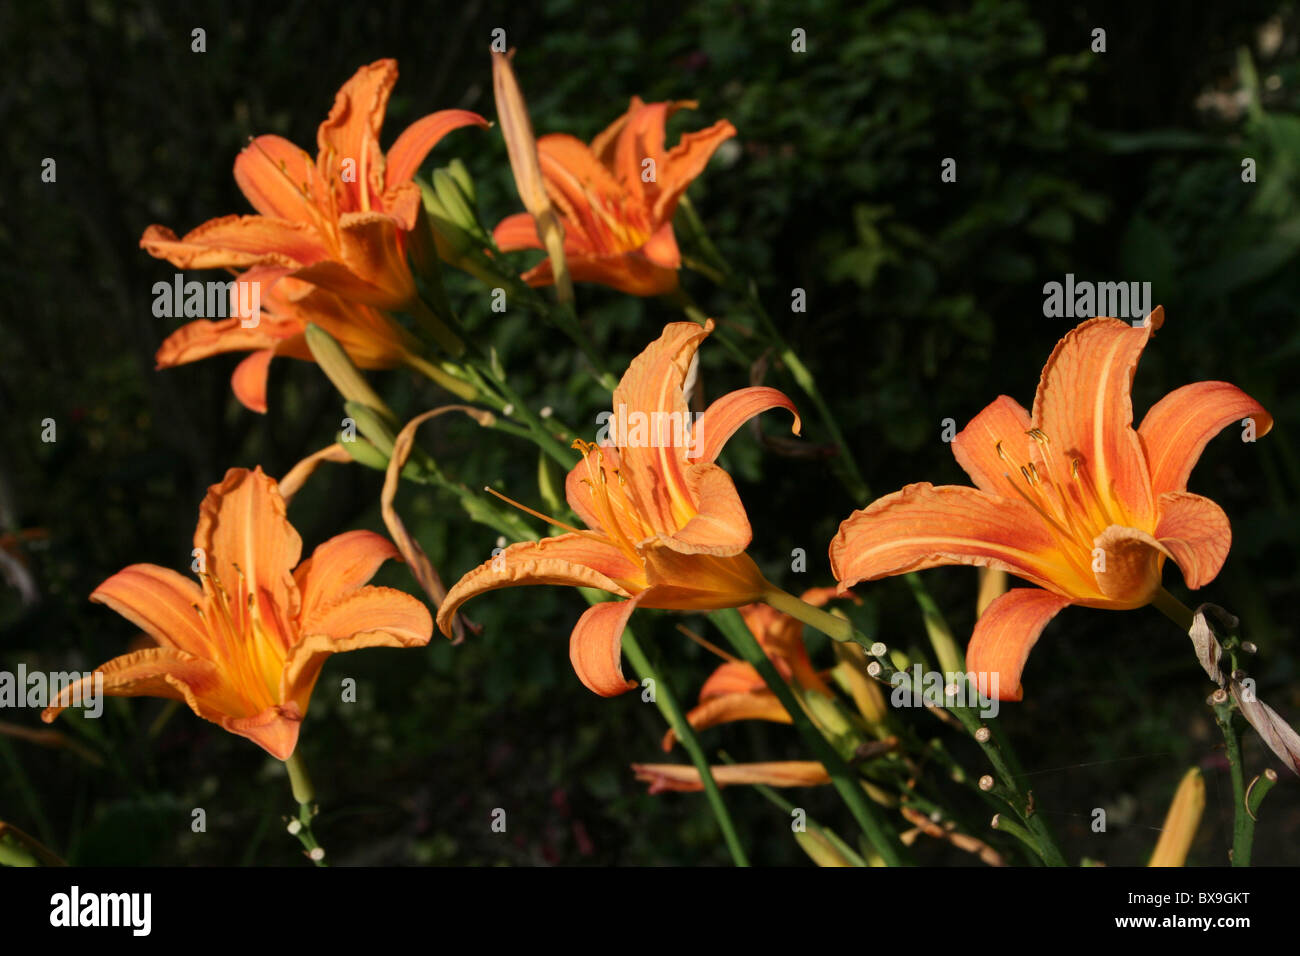 Orange farbigen Taglilien Hemerocallis genommen an Wendo Genet, Äthiopien Stockfoto